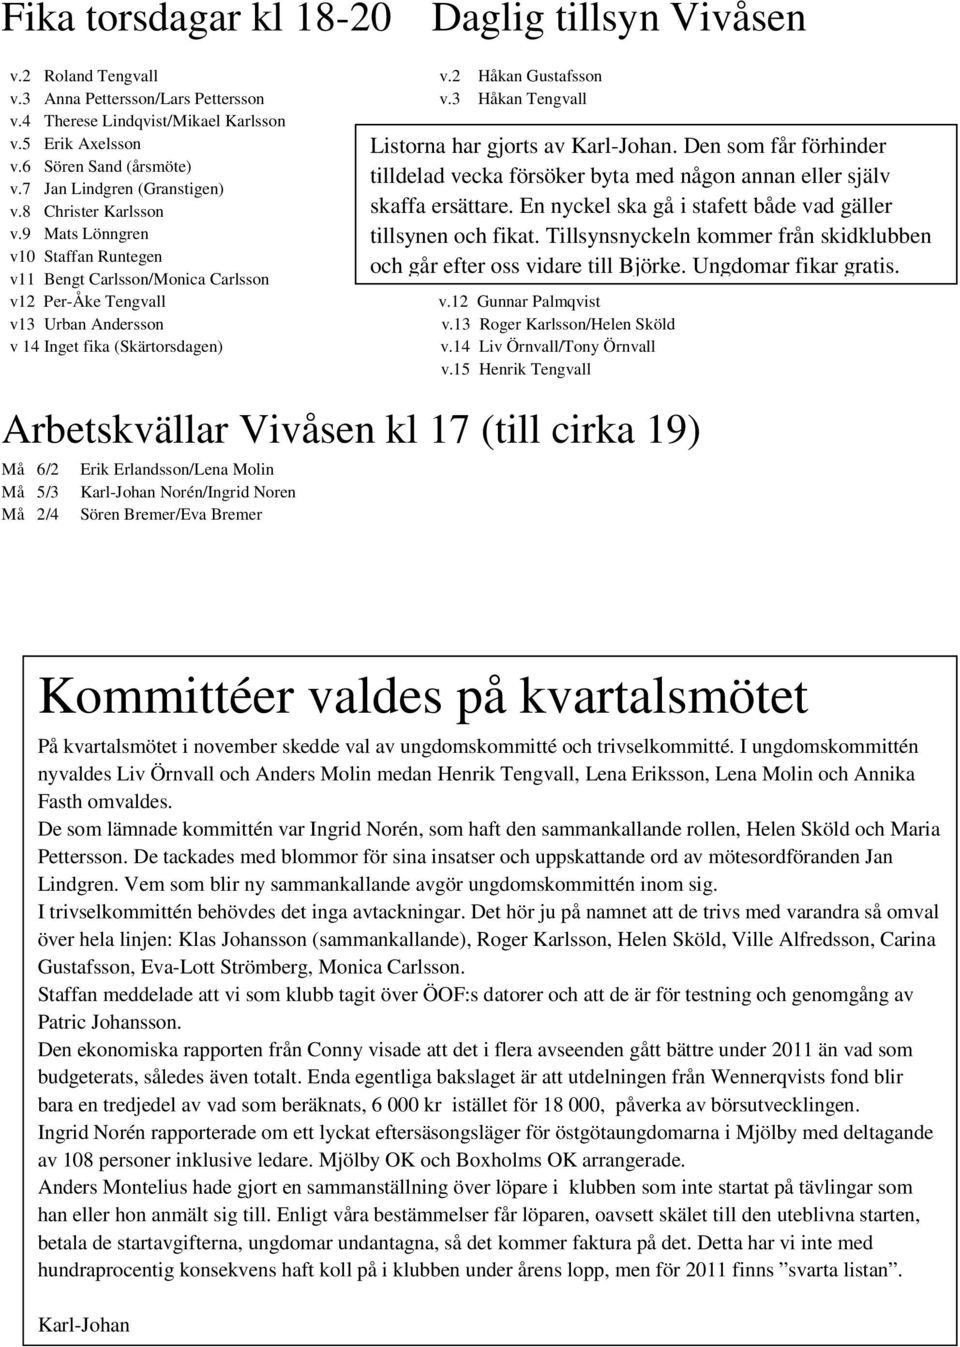 9 Mats Lönngren v10 Staffan Runtegen v11 Bengt Carlsson/Monica Carlsson v12 Per-Åke Tengvall v13 Urban Andersson v 14 Inget fika (Skärtorsdagen) v.12 Gunnar Palmqvist v.